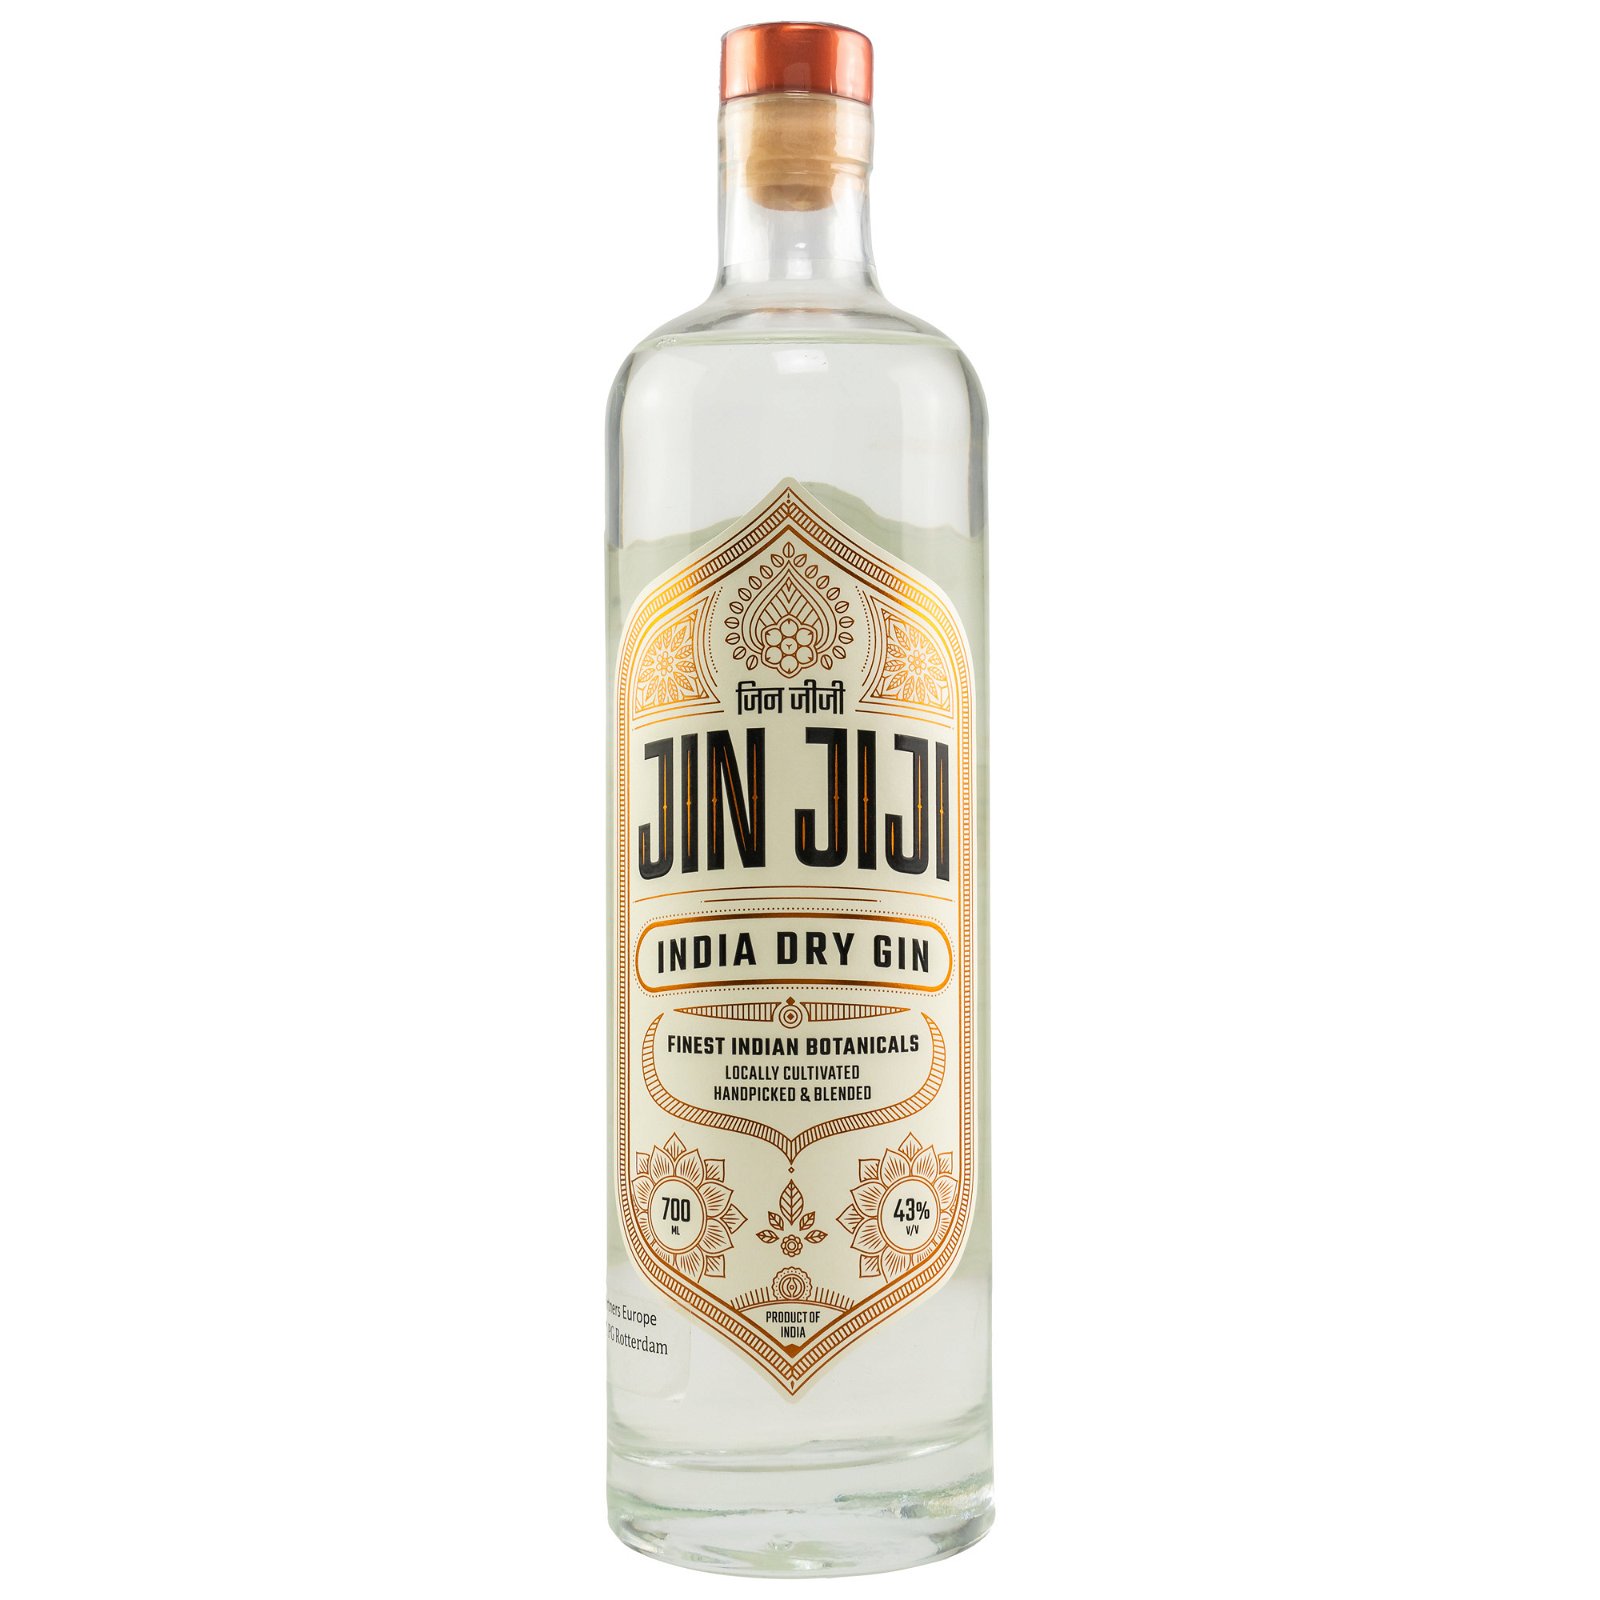 Jin Jiji Dry Gin